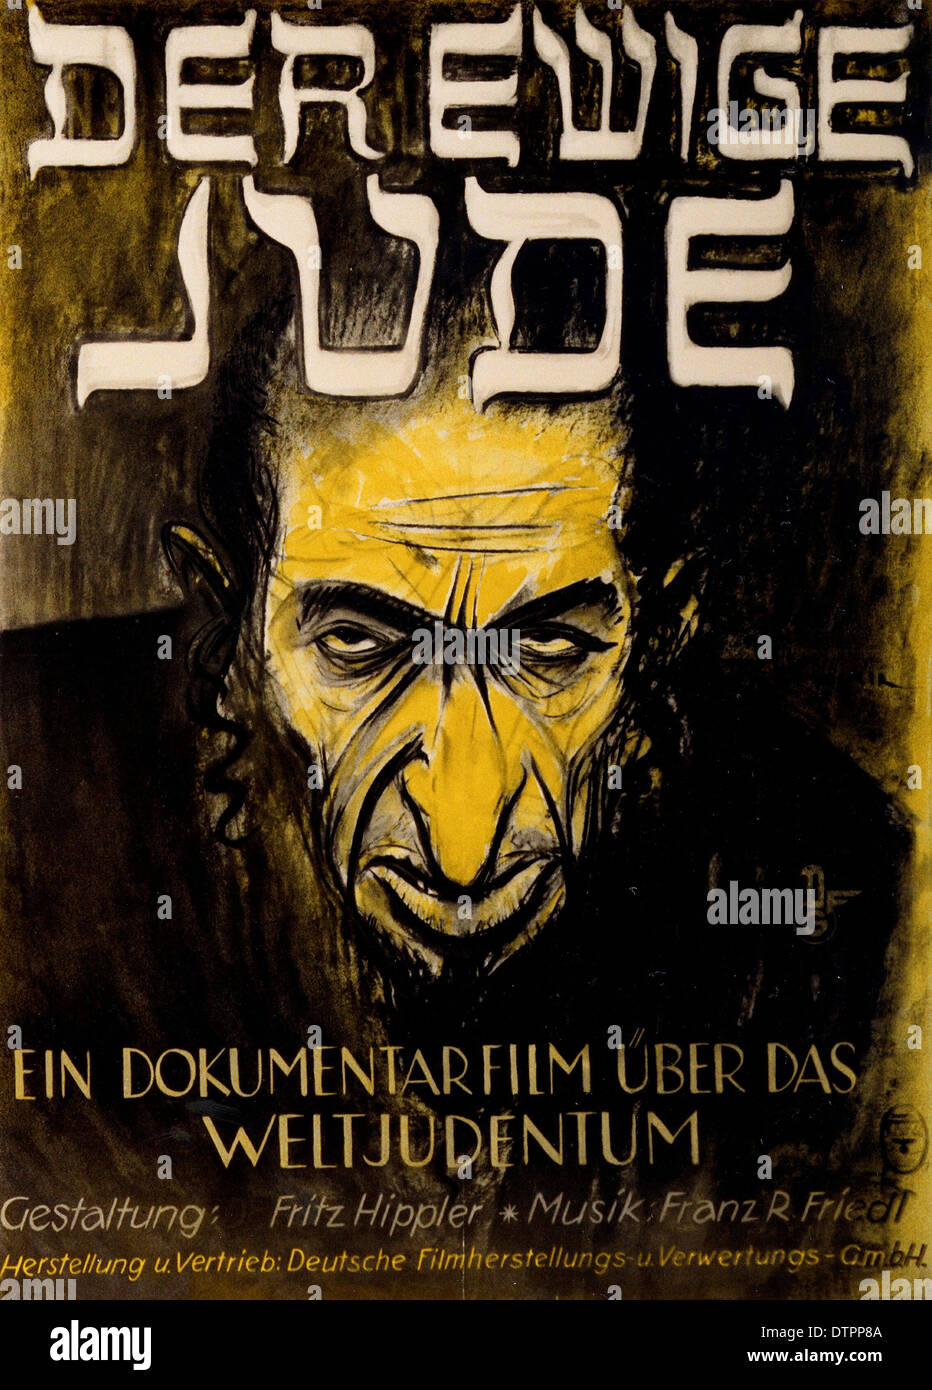 Póster de propaganda antisemita del régimen nazi alemán era en la cual el judío es mostrado como un hombre de aspecto feo, enojado con prominente nariz exagerada Foto de stock